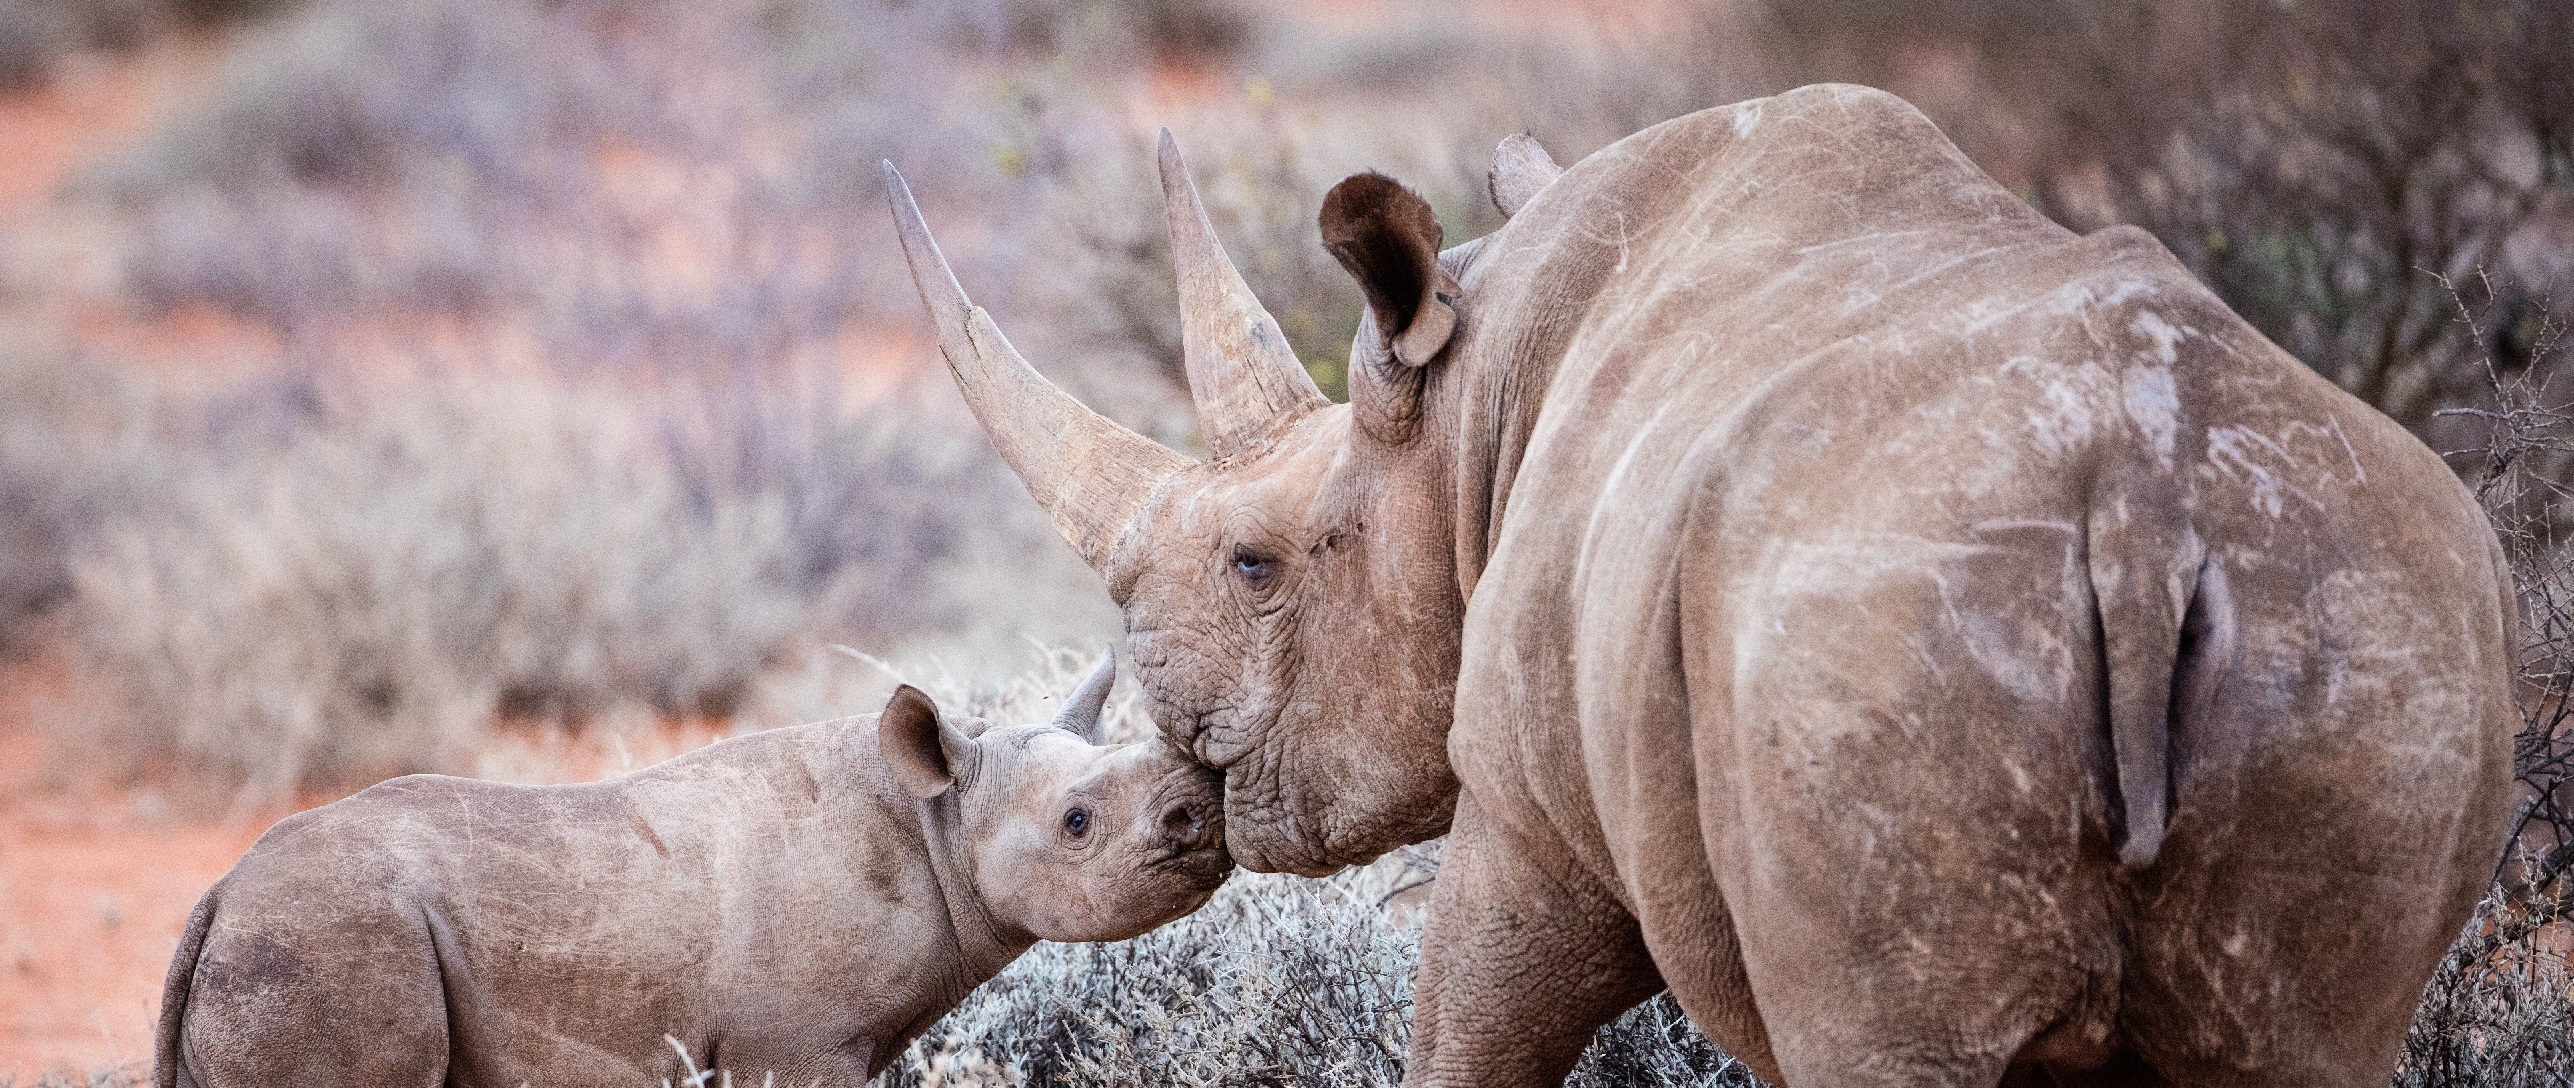 @Sigfox: En Zimbabue lanzan un “GoogleMap de rinocerontes” para combatir la caza furtiva